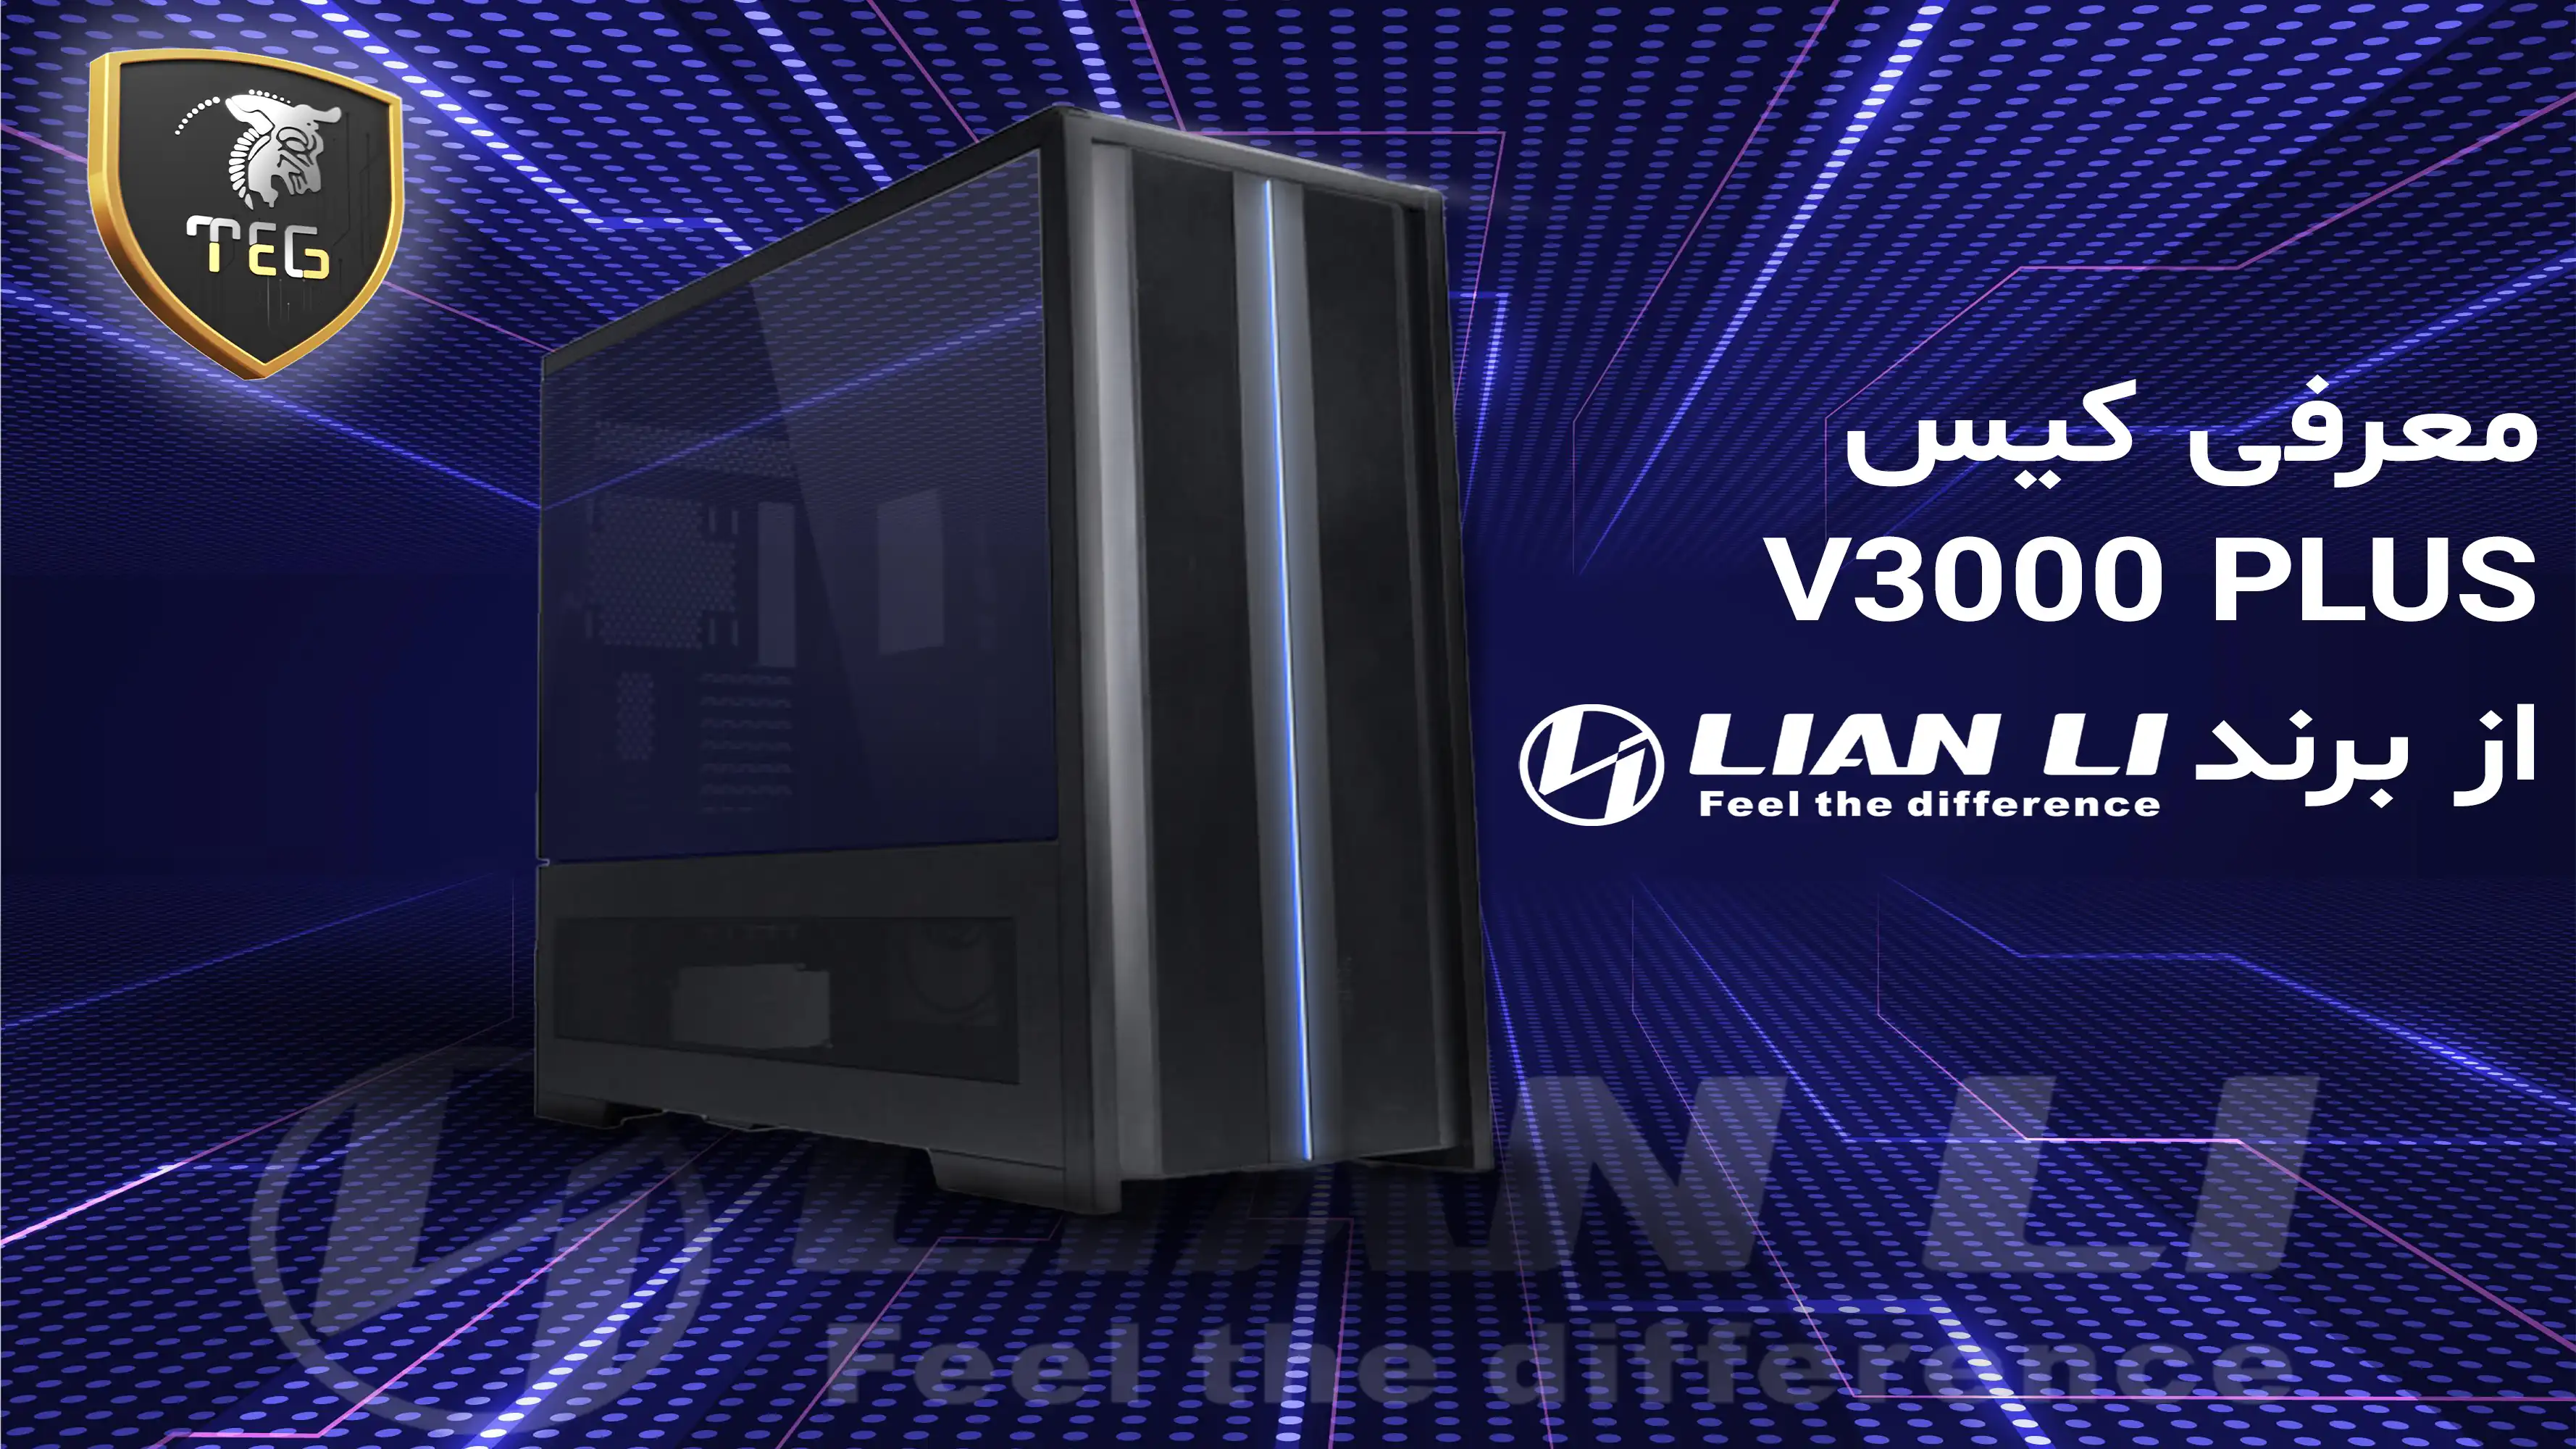 معرفی خفن ترین کیس لیان لی مدل V3000 PLUS